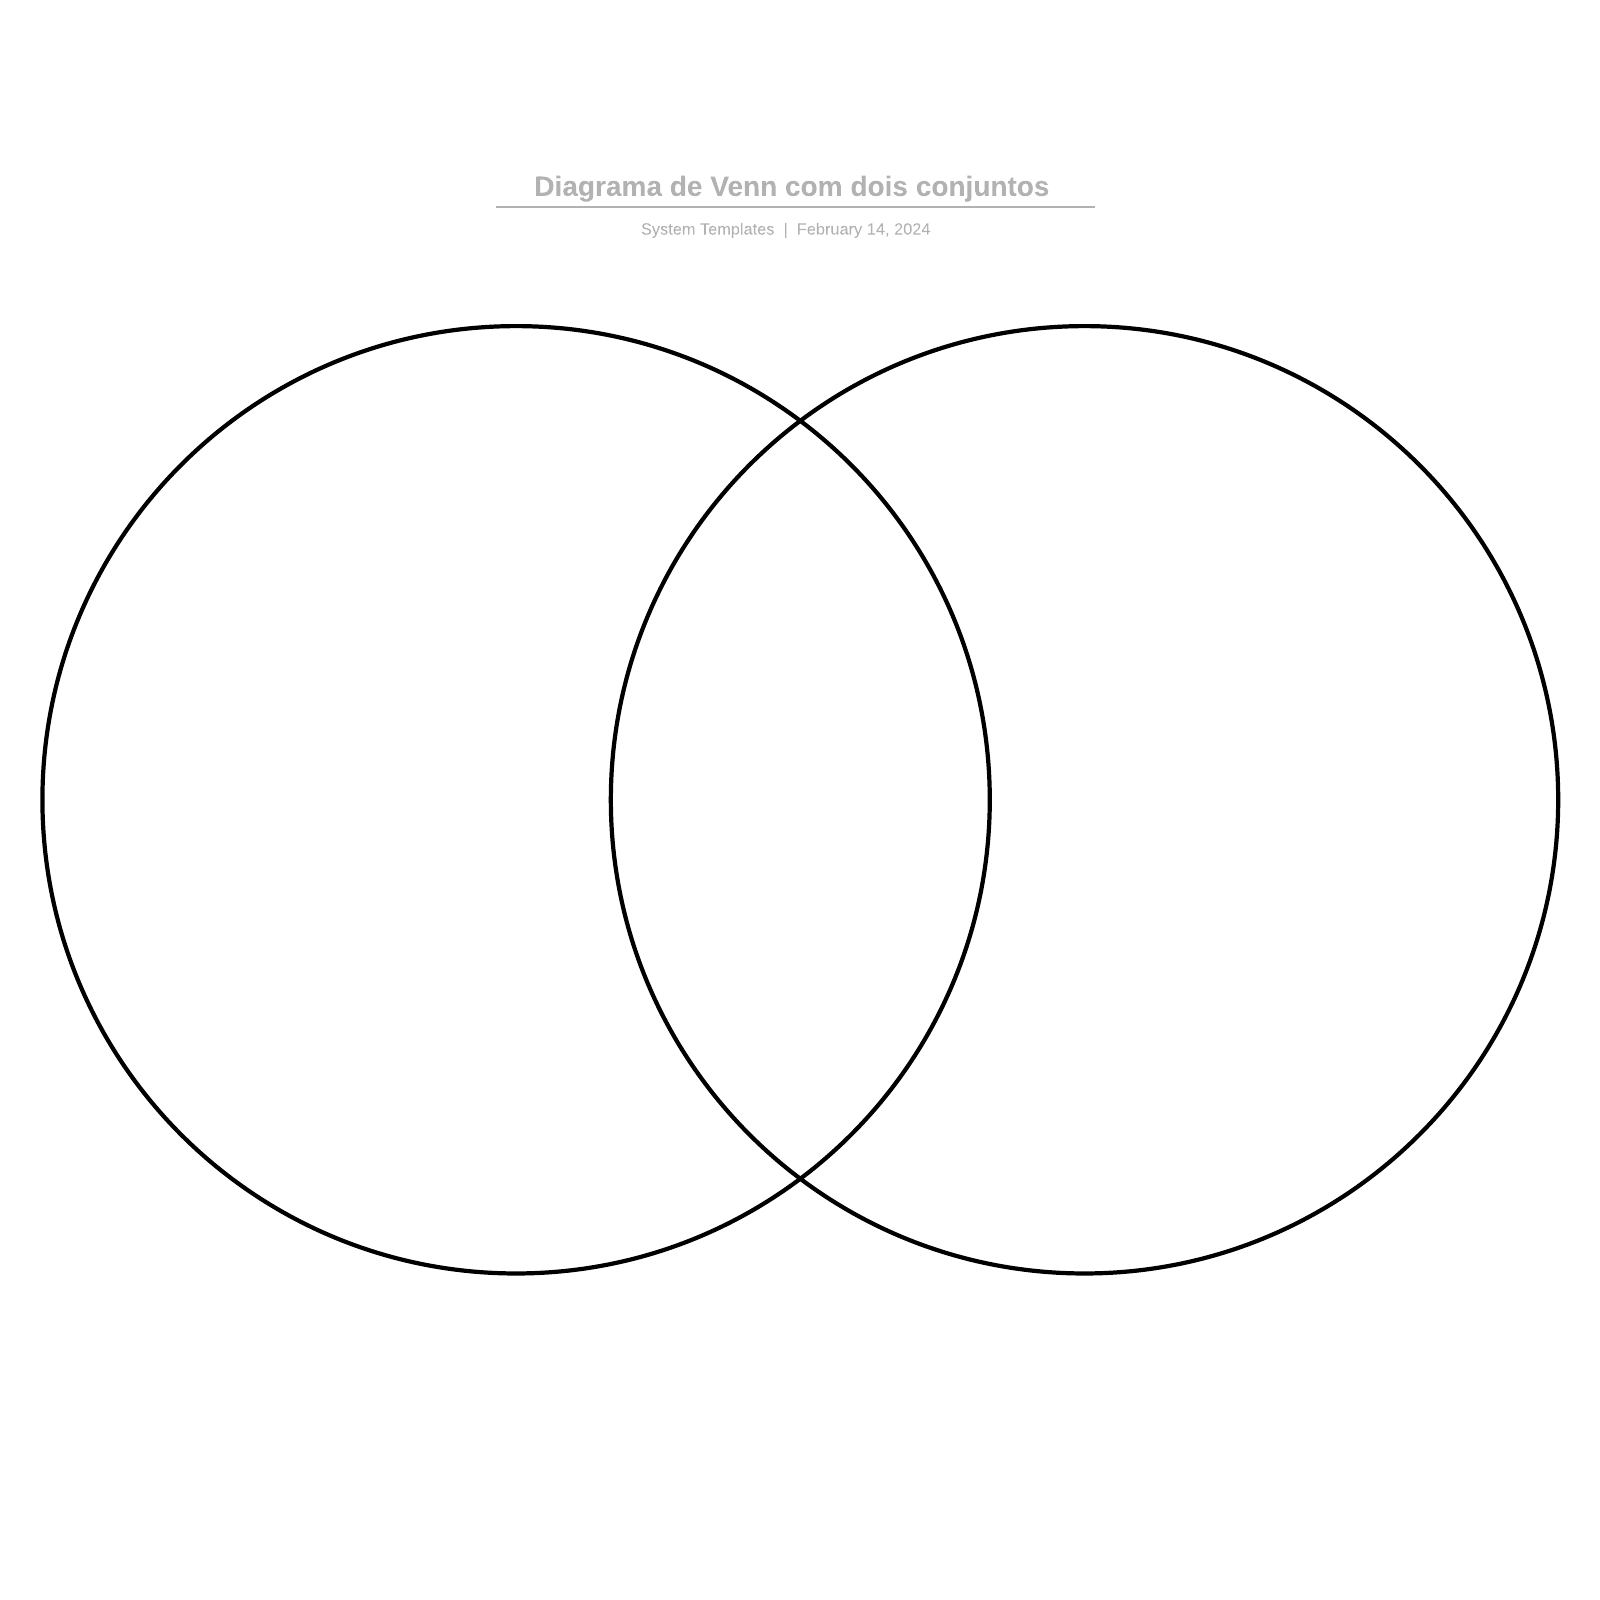 Diagrama de Venn com dois conjuntos example